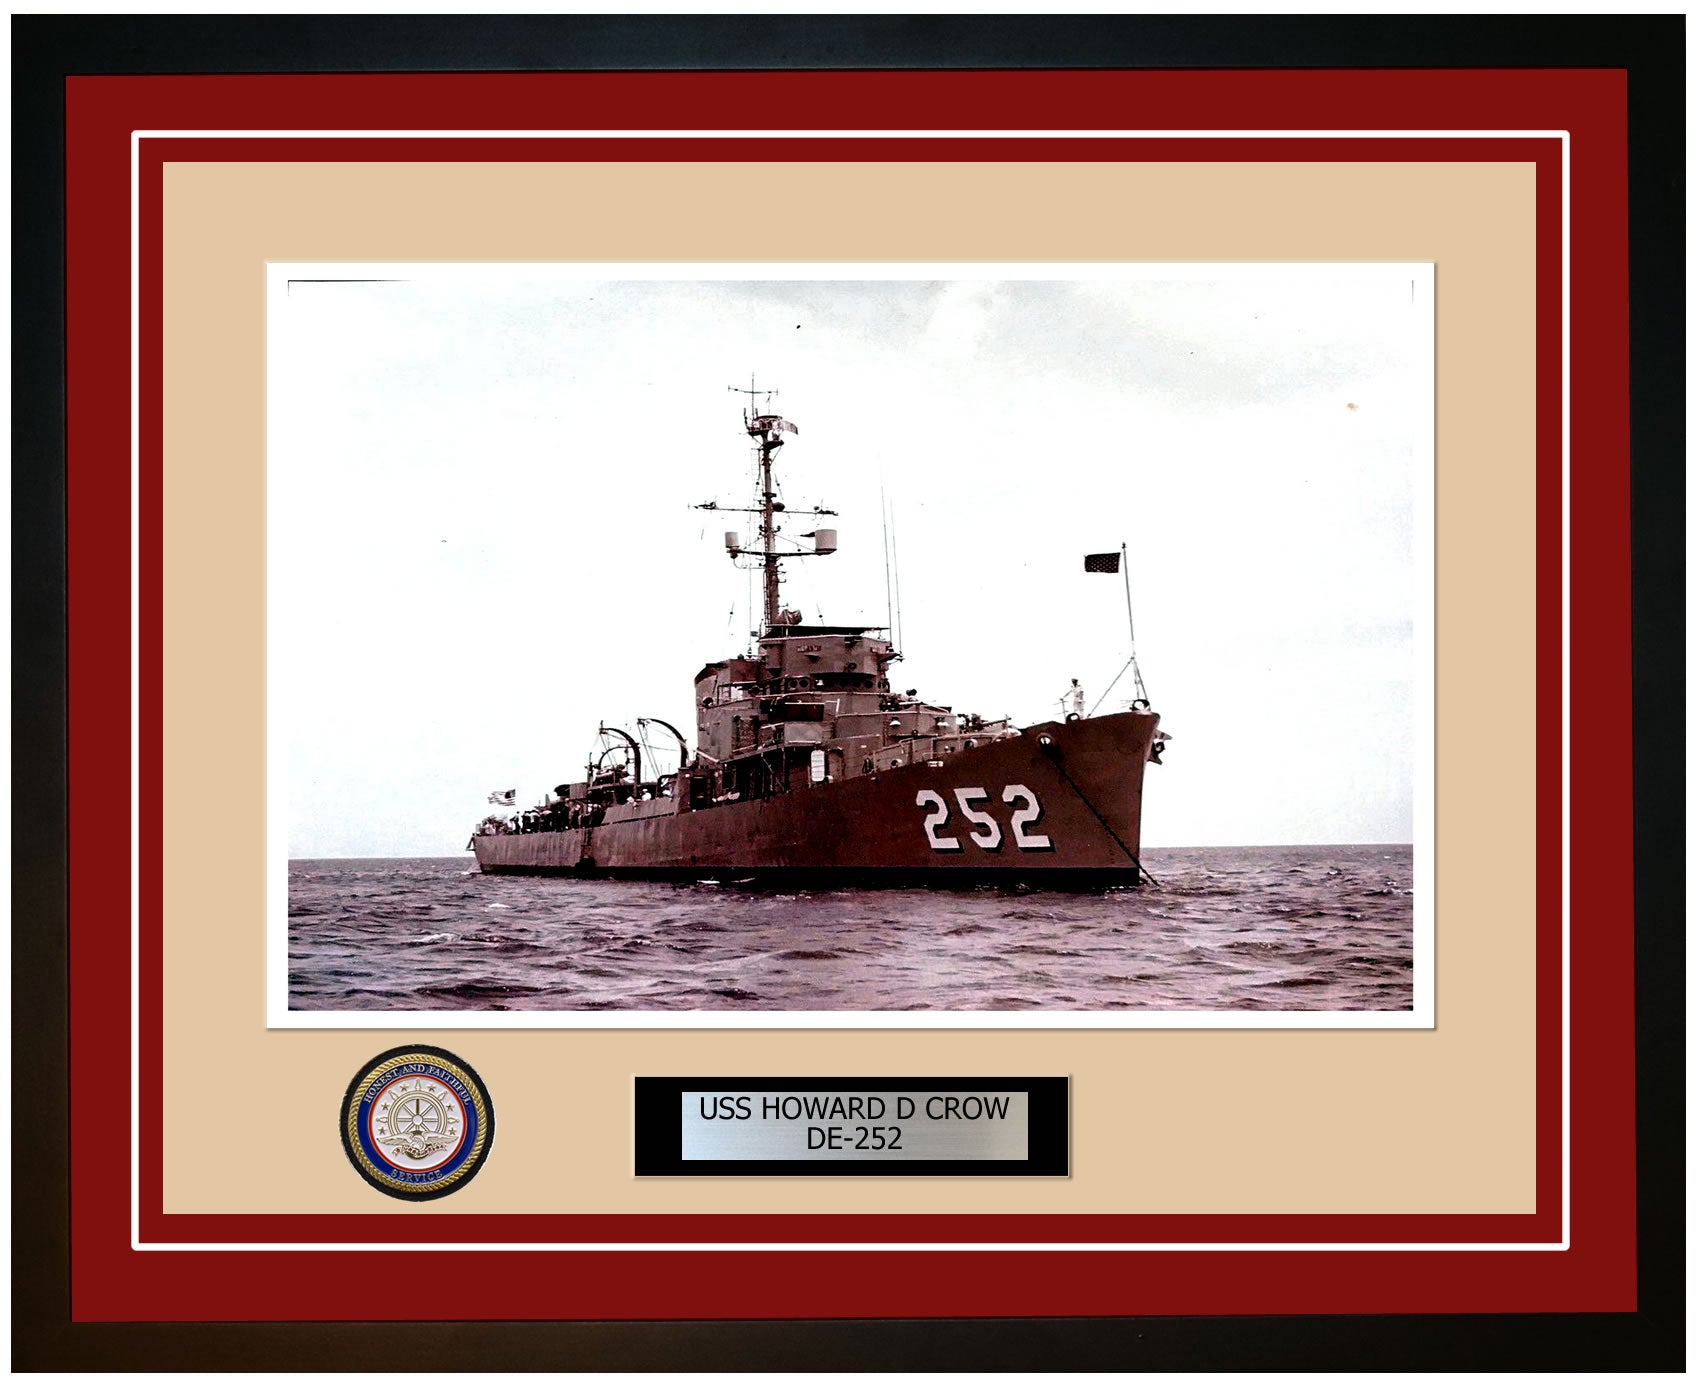 USS Howard D Crow DE-252 Framed Navy Ship Photo Burgundy